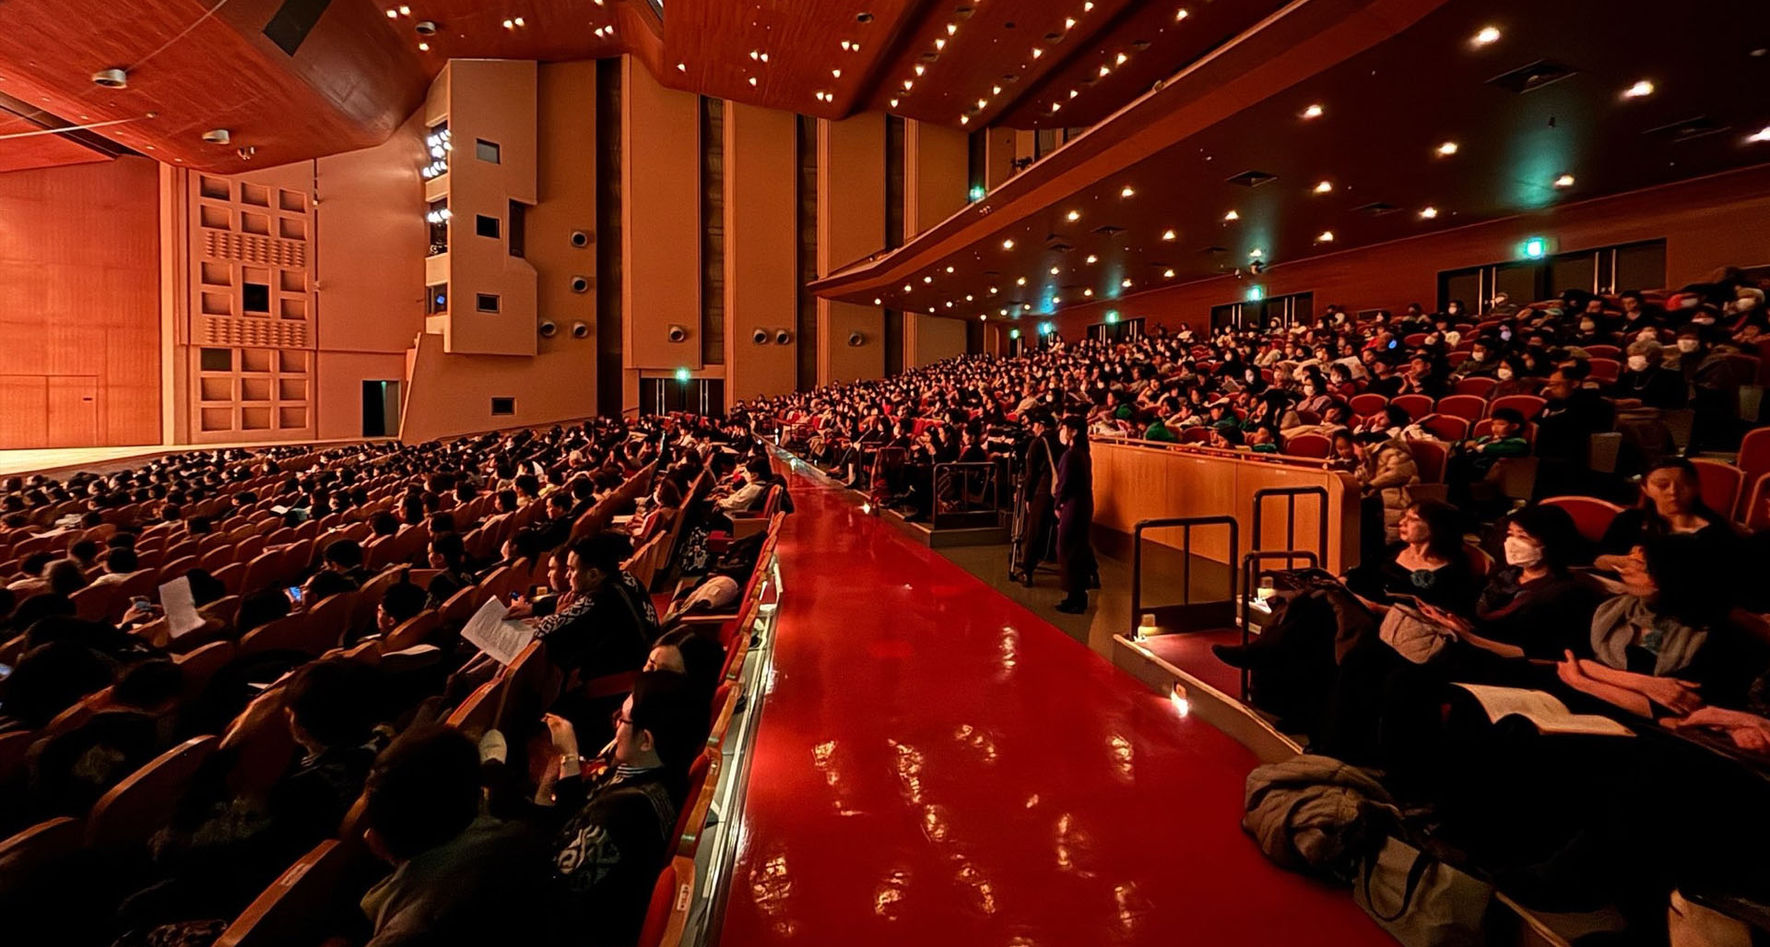 Awards Ceremony in Kobe, Japan © INTERKULTUR